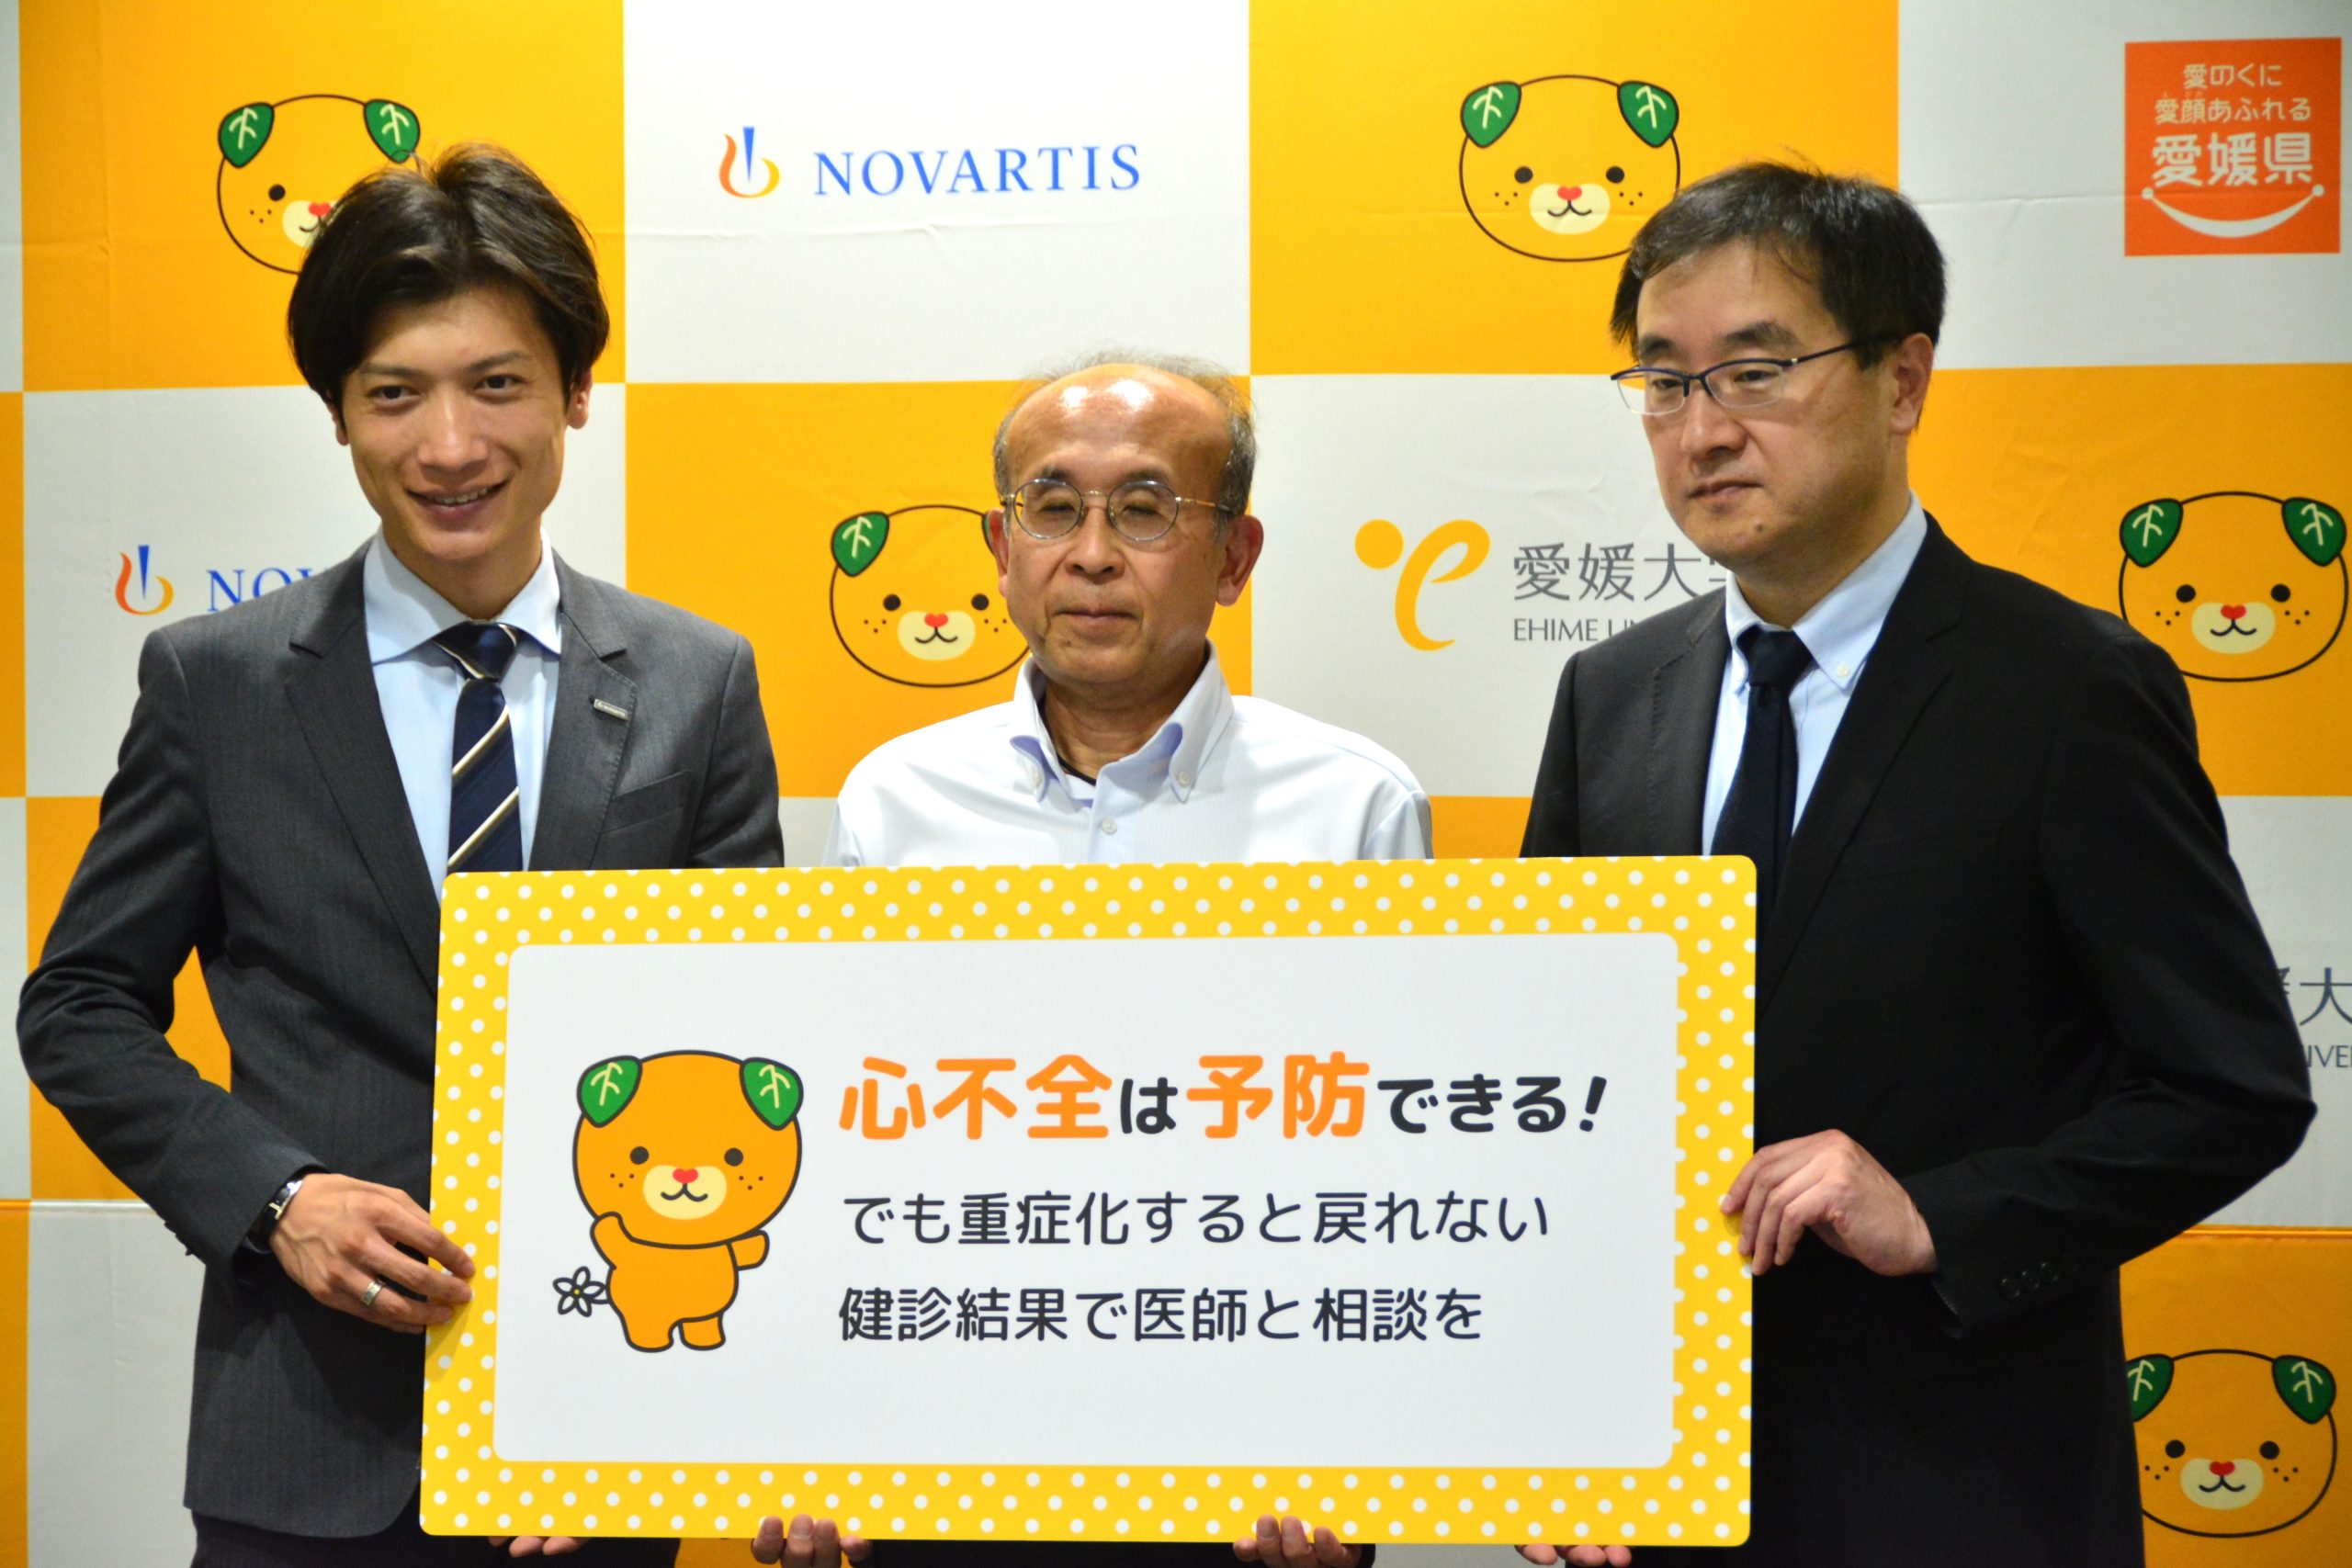 愛媛大学、愛媛県、ノバルティス ファーマ株式会社でメディアセミナーを開催しました。